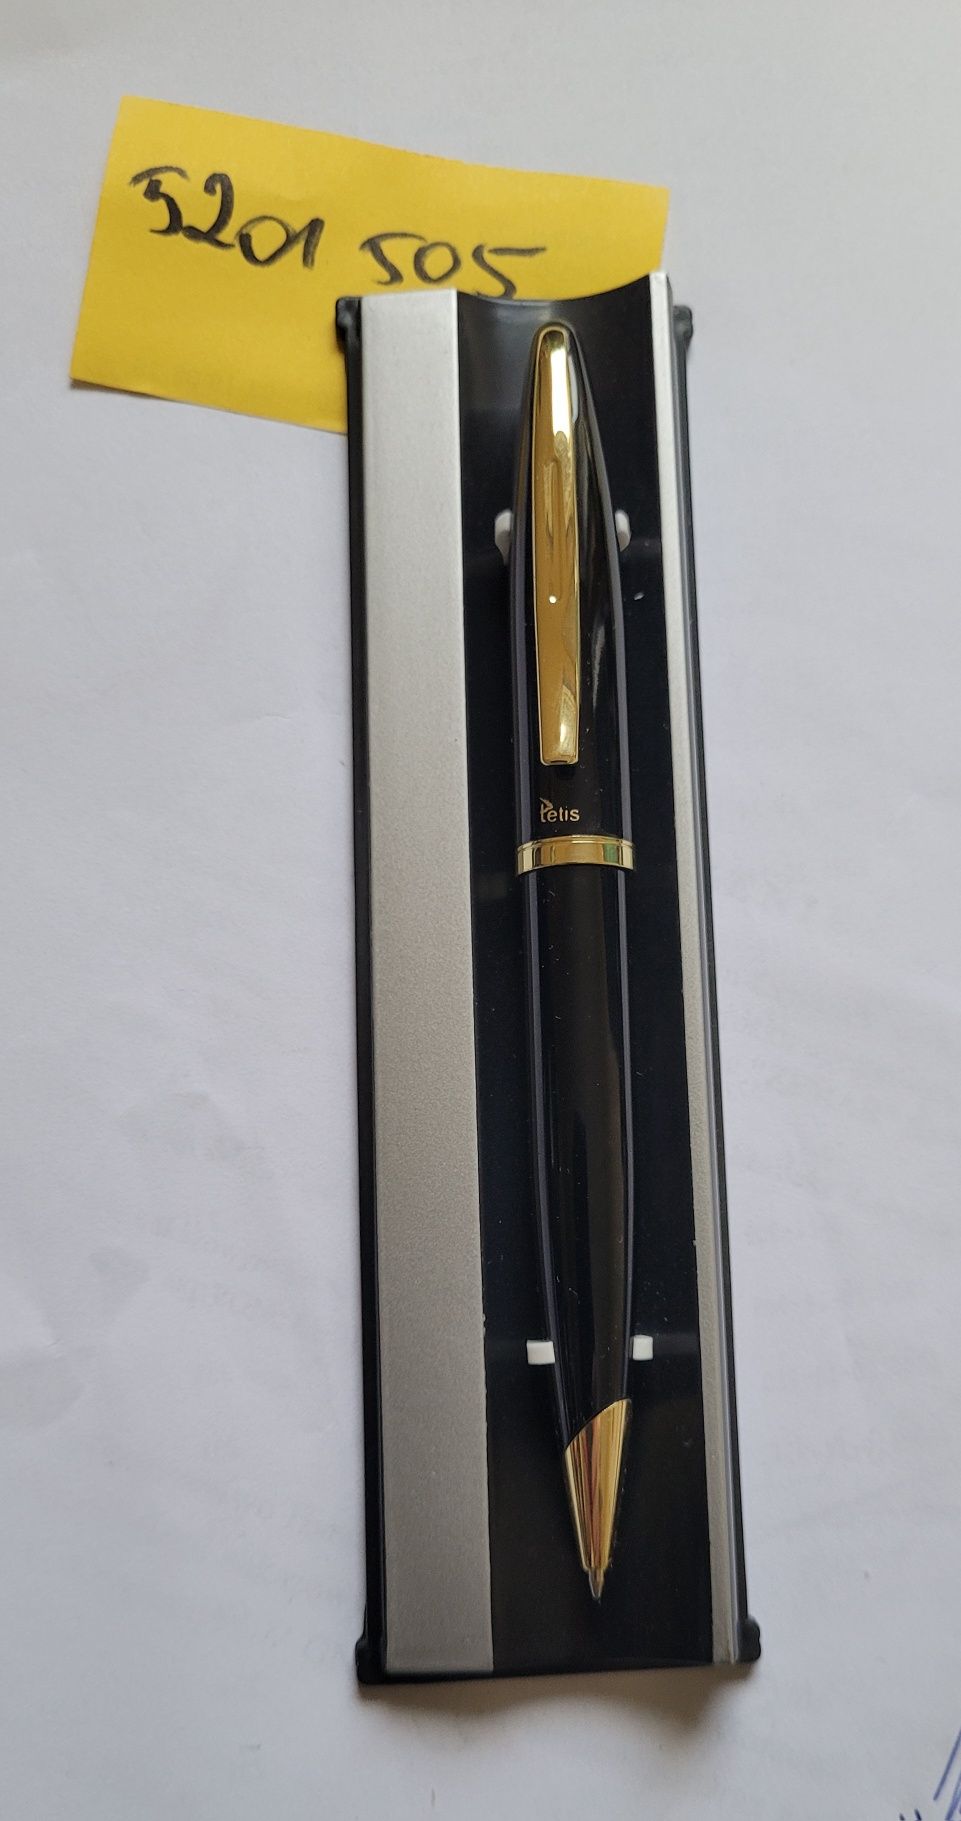 Długopis marki Tetis